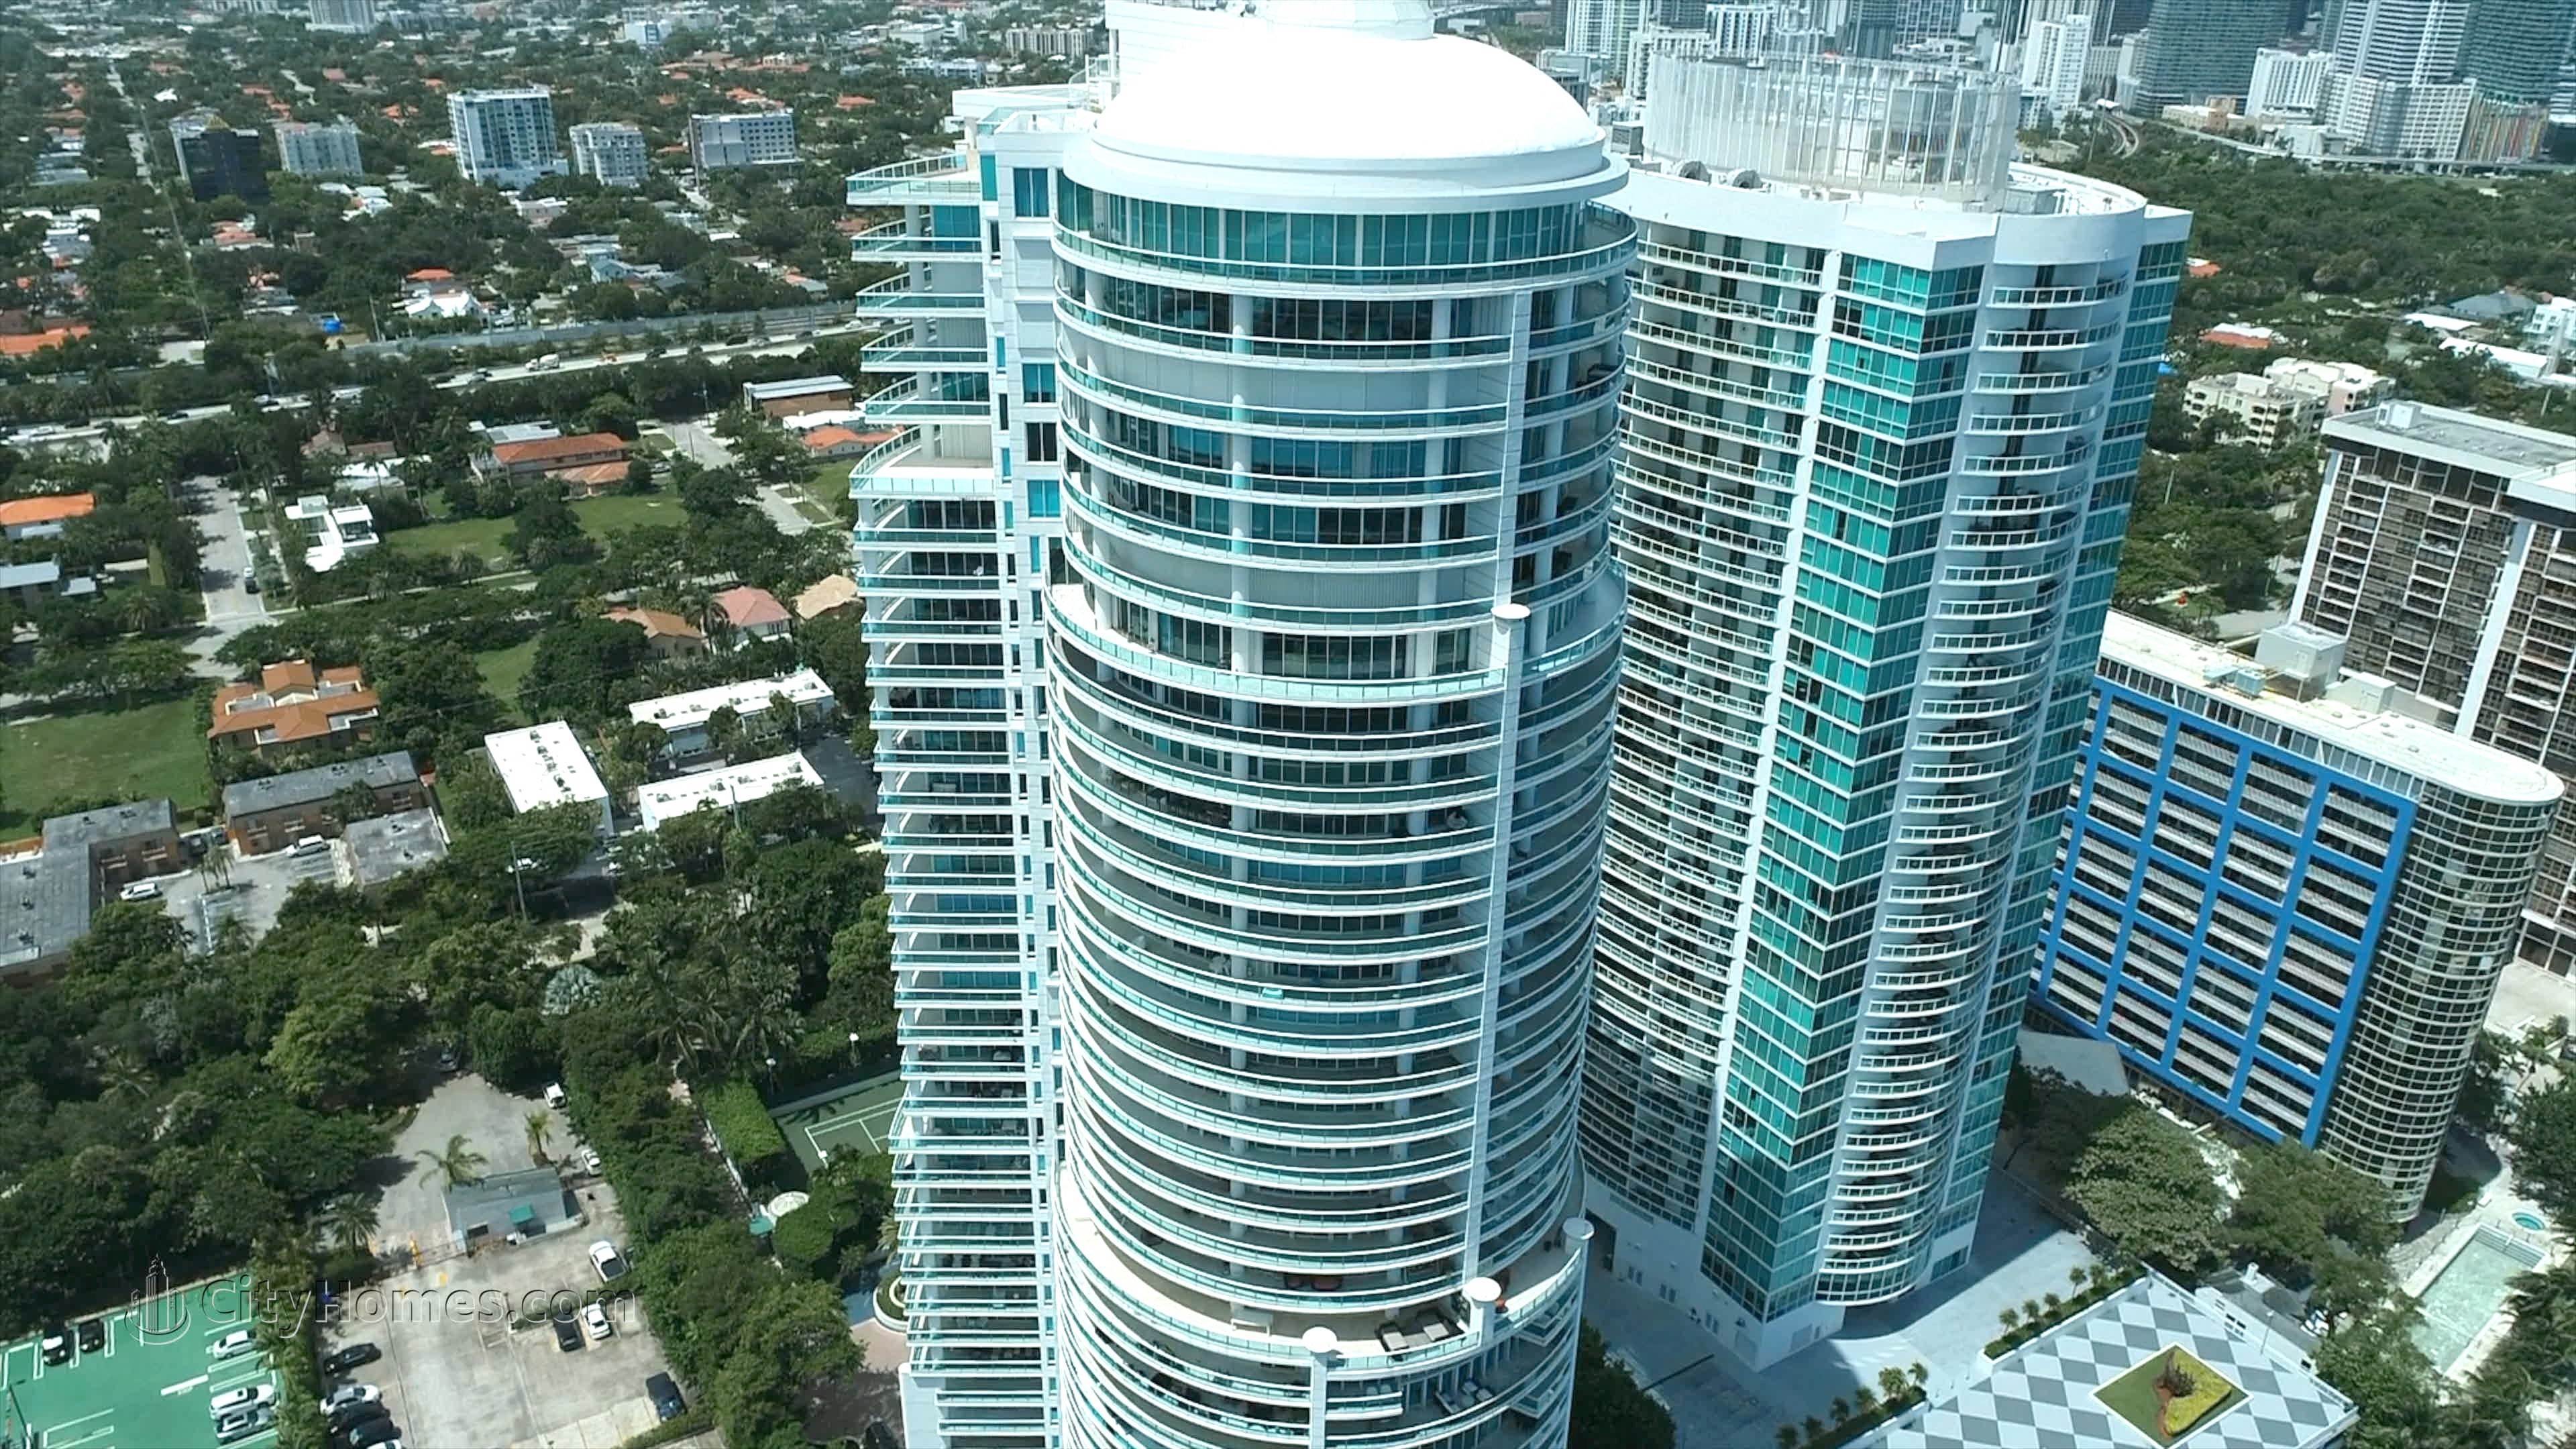 6. Bristol Tower Brickell здание в 2127 Brickell Avenue, Brickell, Miami, FL 33129